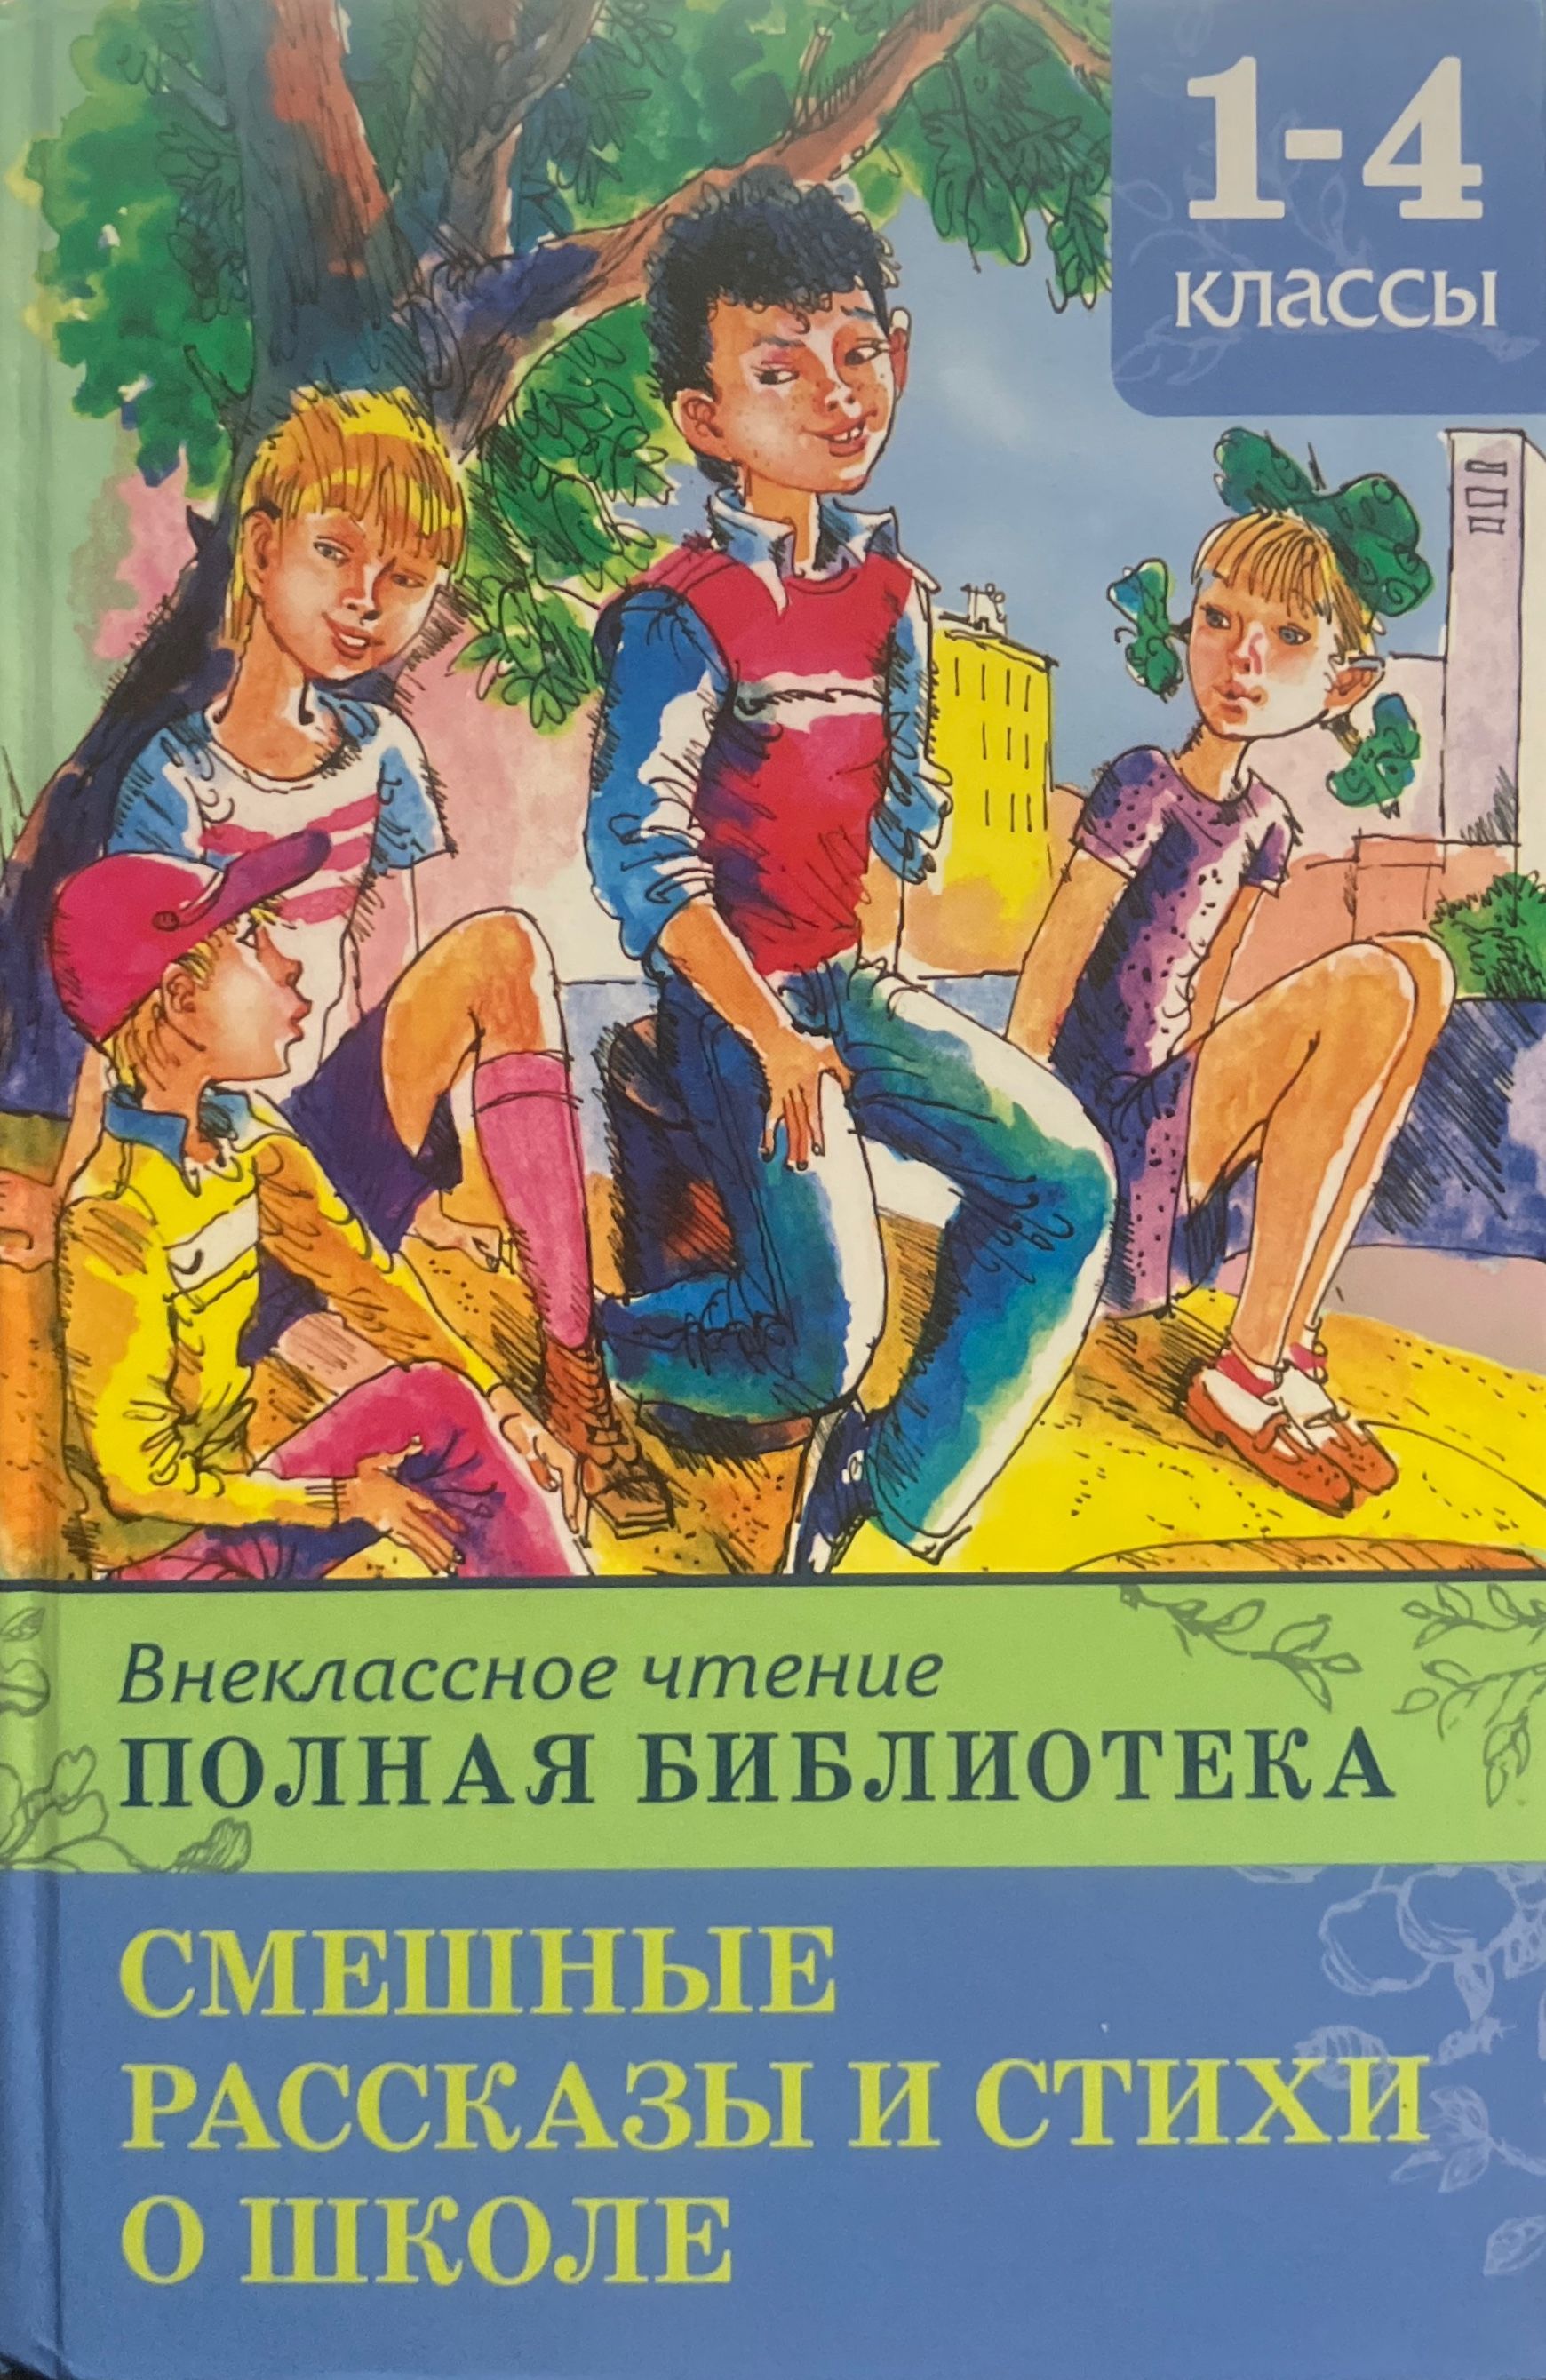 Внеклассное чтение в школе